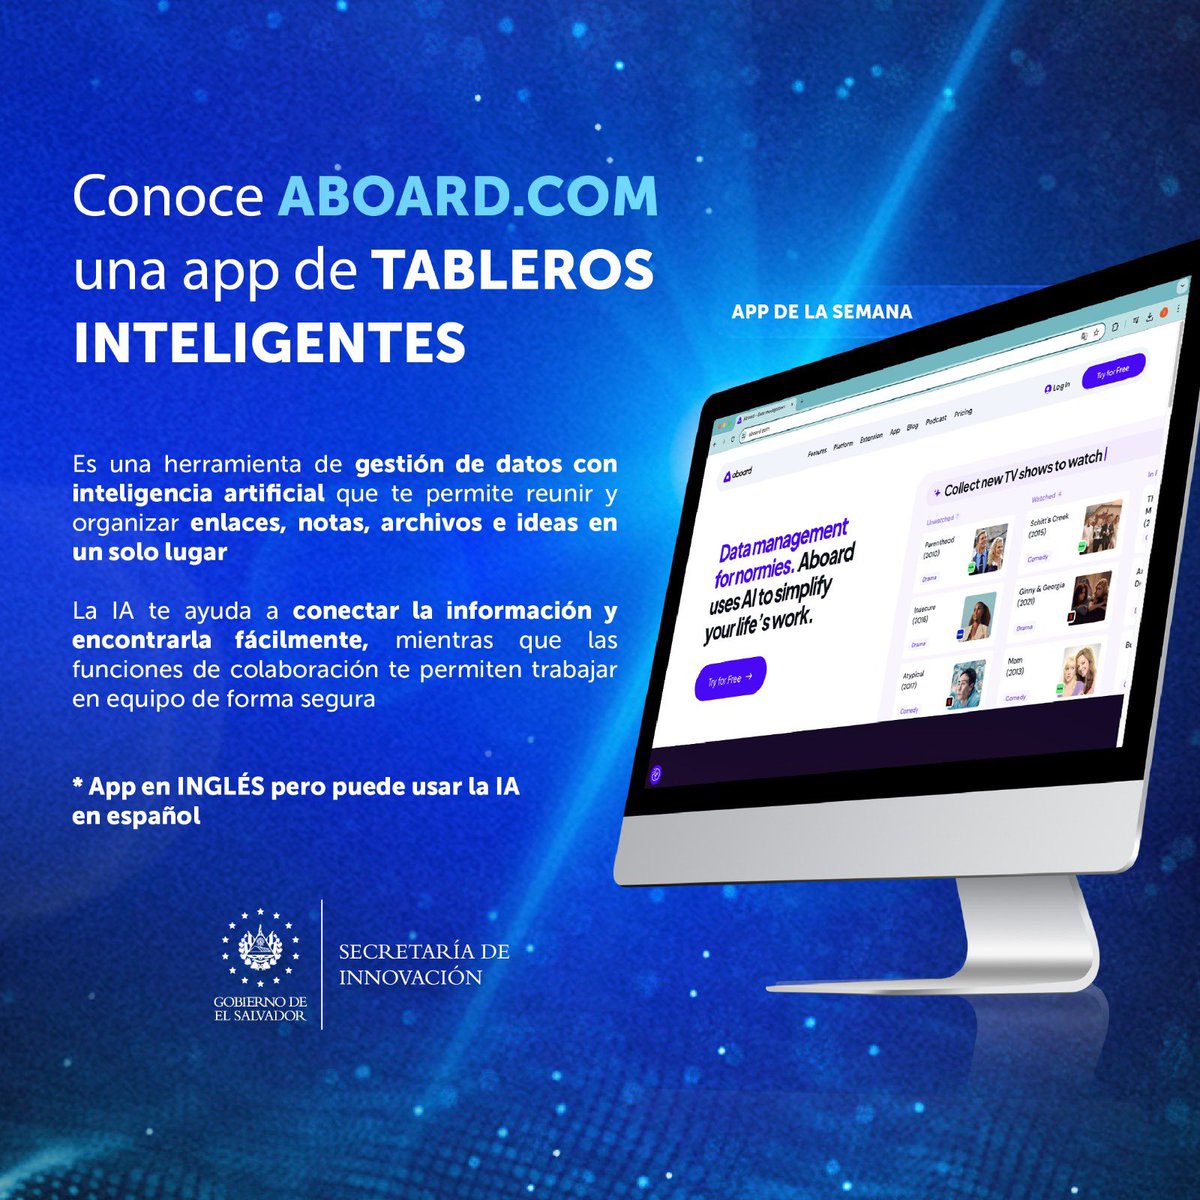 #NoticiaTech | Aboard.com 🌐 Una app de tableros inteligentes que organiza todo, desde enlaces hasta ideas, en un solo lugar Disponible en inglés, con soporte de IA en español